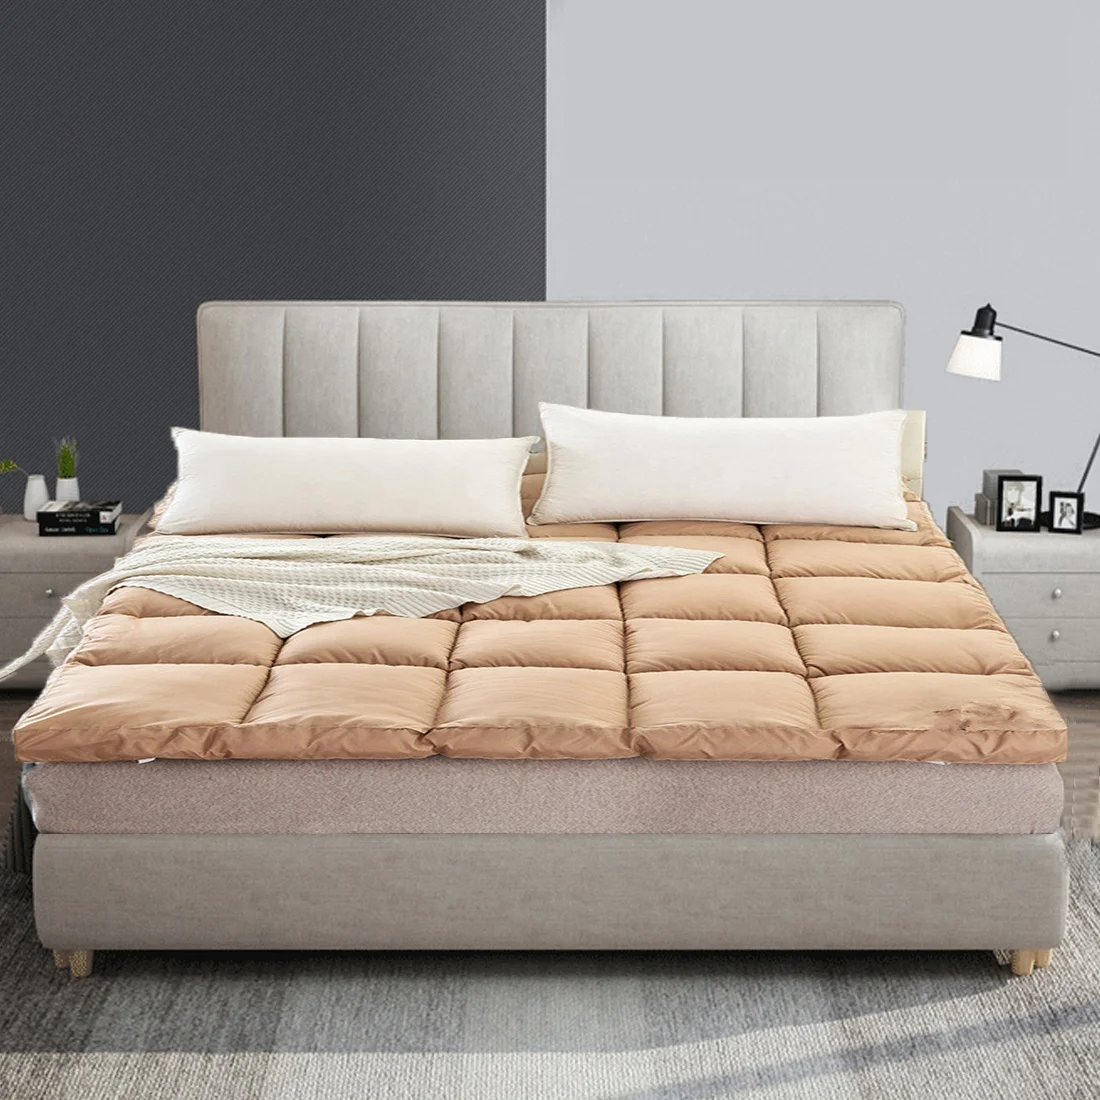 
Роскошный матрас для кровати, для двуспальной кровати, размер king, воздушный поток 5 см 